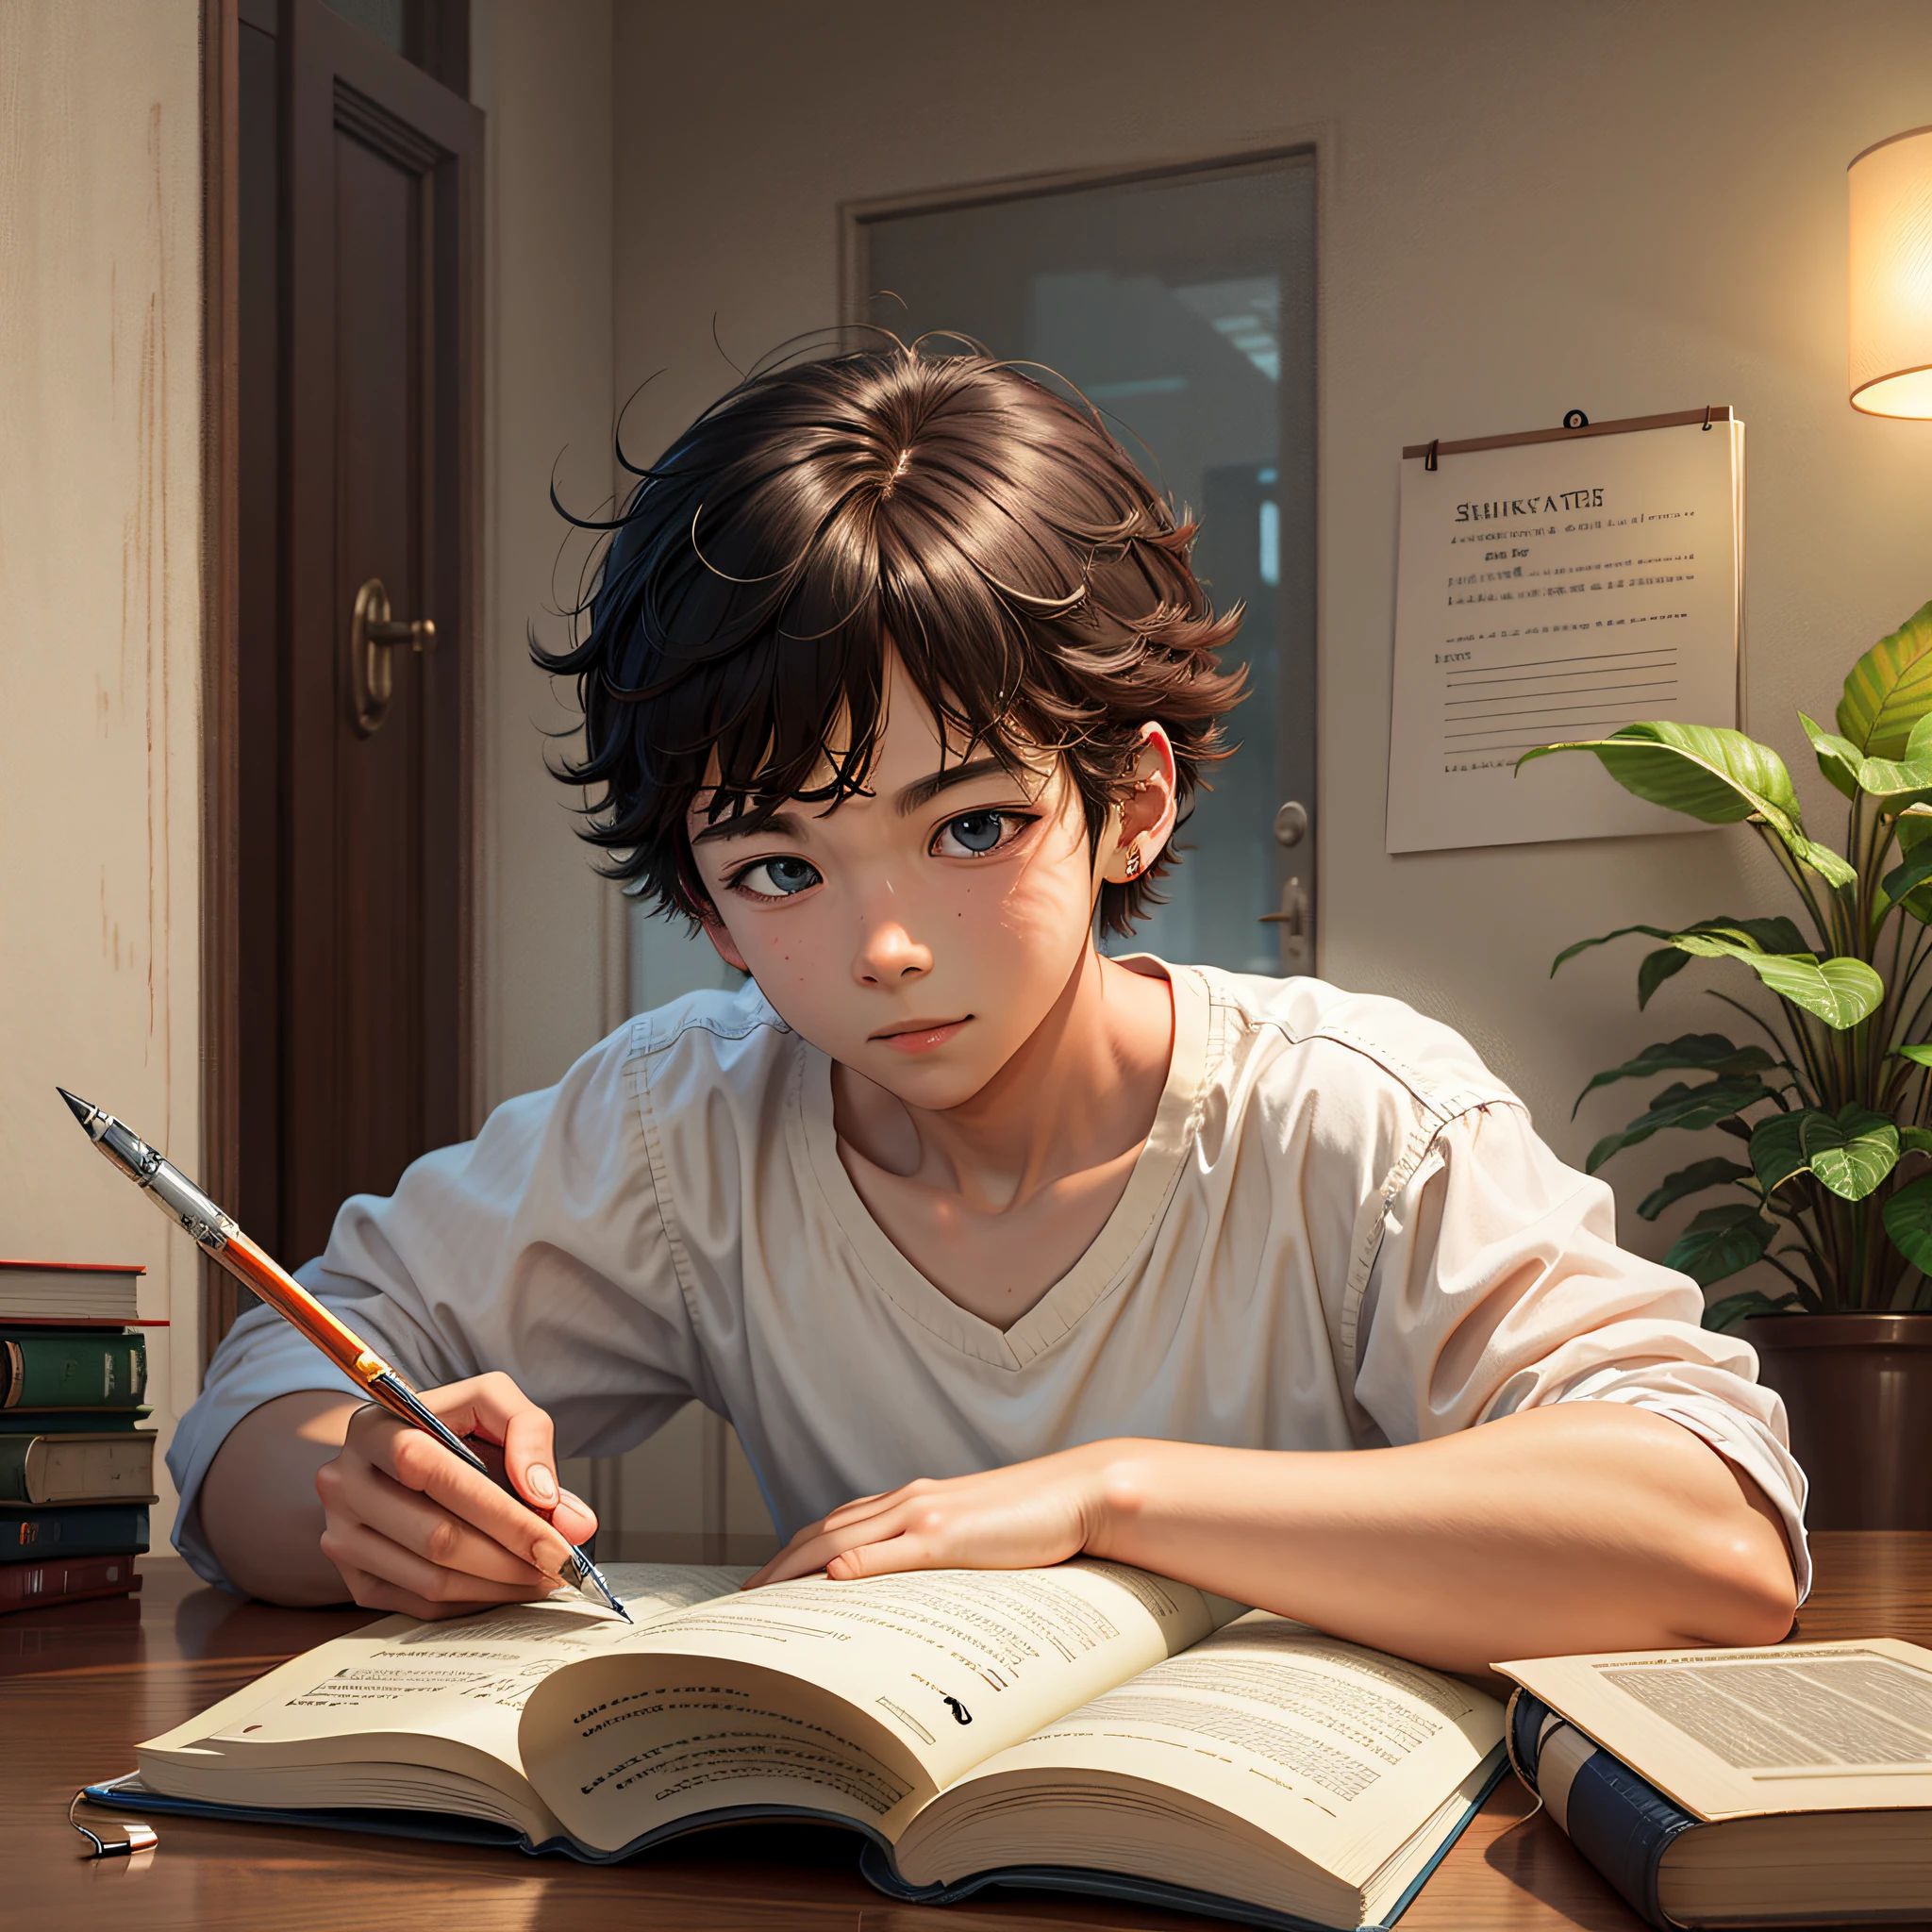 เด็กชายนั่งอยู่ที่โต๊ะโดยมีหนังสือและปากกาอยู่ข้างหน้าเขา, realistic อะนิเมะ 3 d style, อะนิเมะ realism style, มาโกโตะ ชินไค. การแสดงผลแบบดิจิทัล, realistic อะนิเมะ artstyle, realistic อะนิเมะ art style, อะนิเมะ realism, งานศิลปะในรูปแบบของกูไวซ์, ภาพวาดสาวน่ารักเหมือนจริง, อะนิเมะ. แสงนุ่มนวล, มาโกโตะ ชินไค. การเรนเดอร์ค่าออกเทน